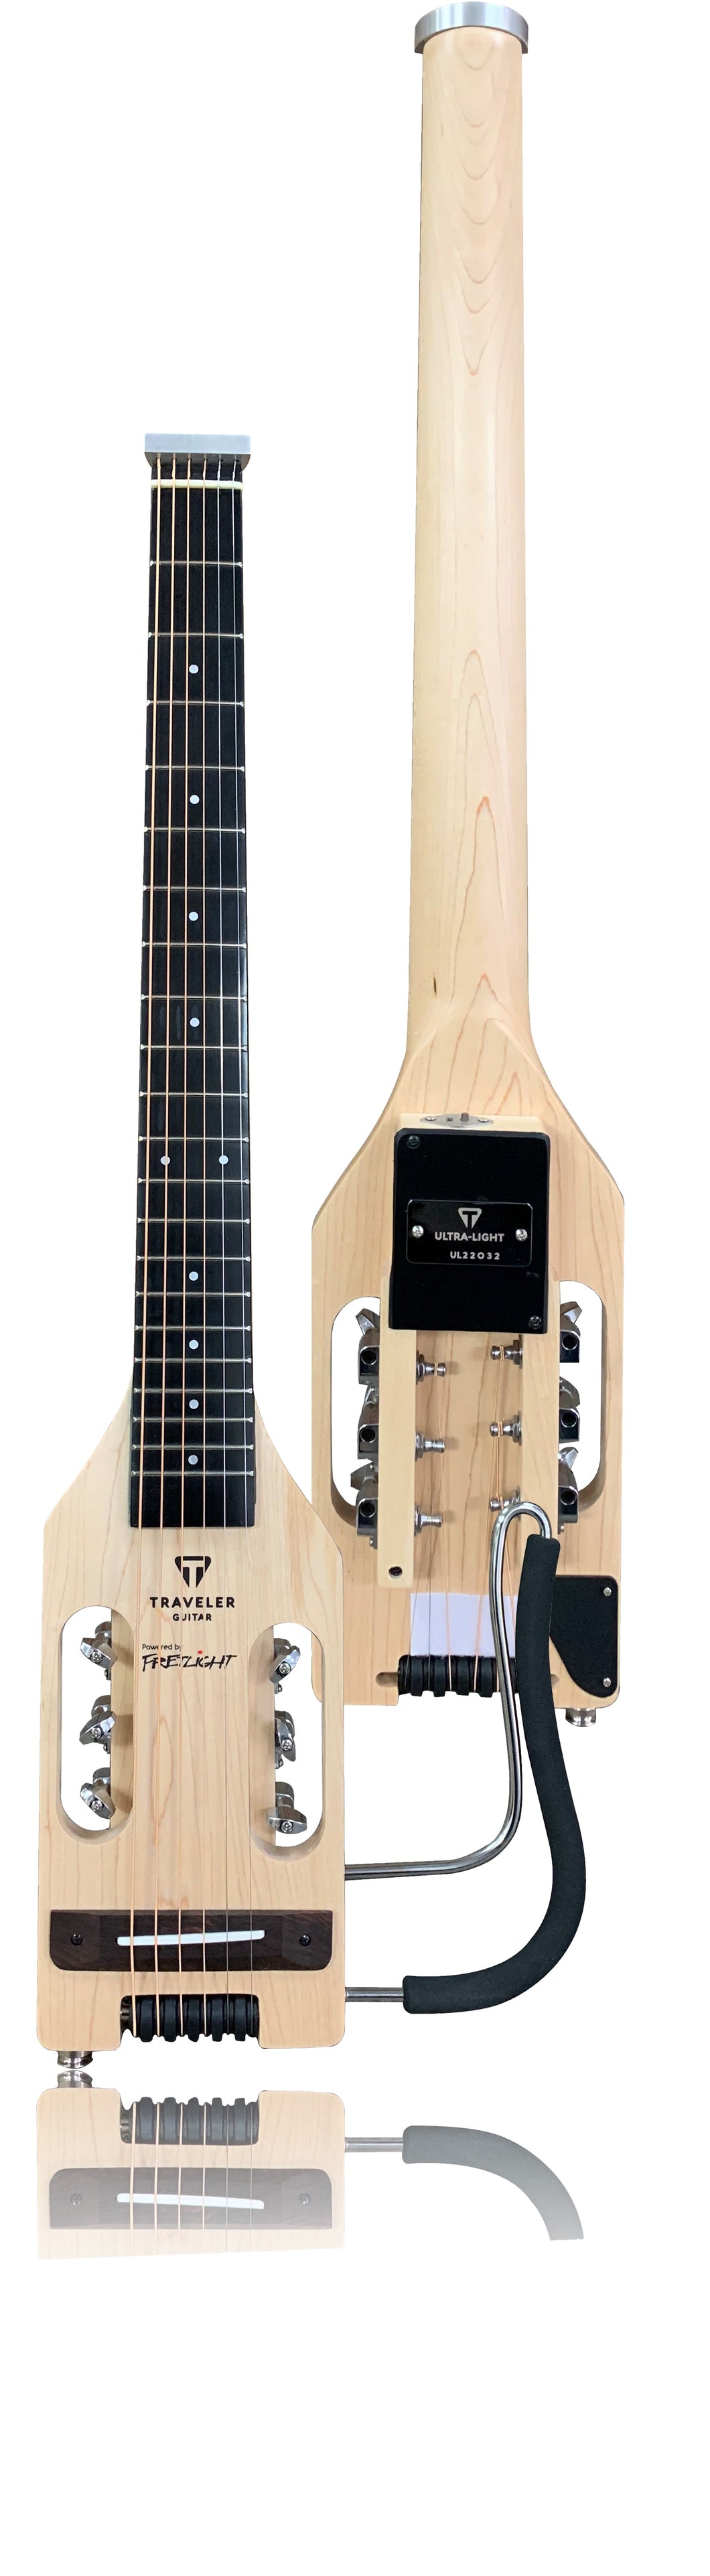 FT-600 Fretlight Traveler Wireless Acoustic Guitar